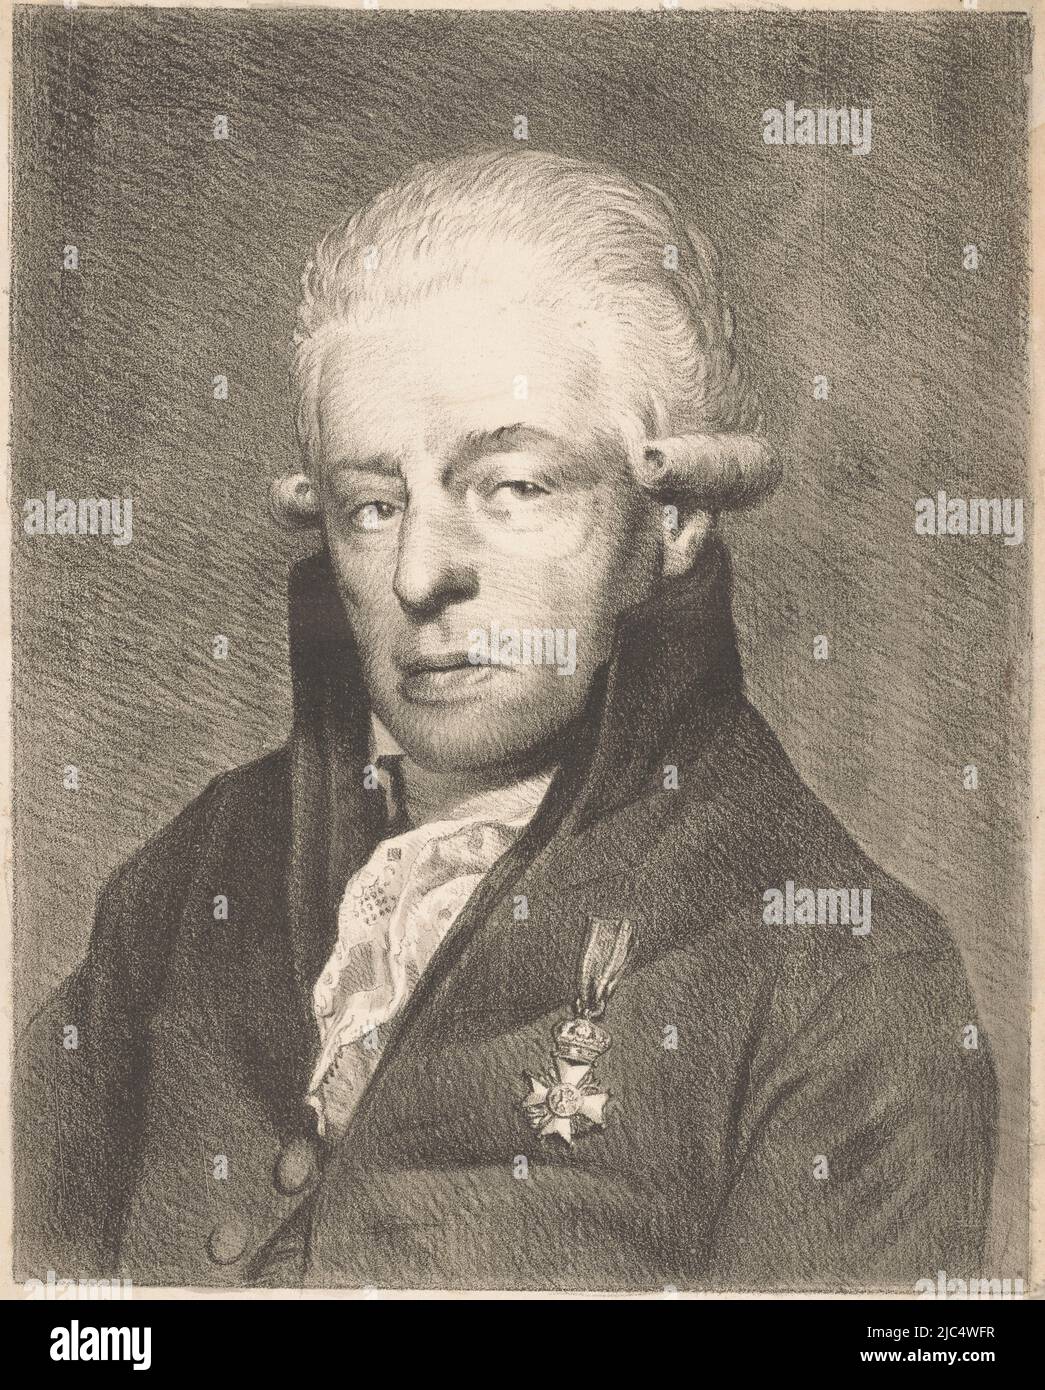 Die porträtierte Person trägt eine Ritterschaft. Unter dem Porträt sein Name, Porträt von Rhijnvis Feith, Druckerei: Willem Bartel van der Kooi, (zugeschrieben), 1809 - 1836, Papier, H 405 mm × B 303 mm Stockfoto